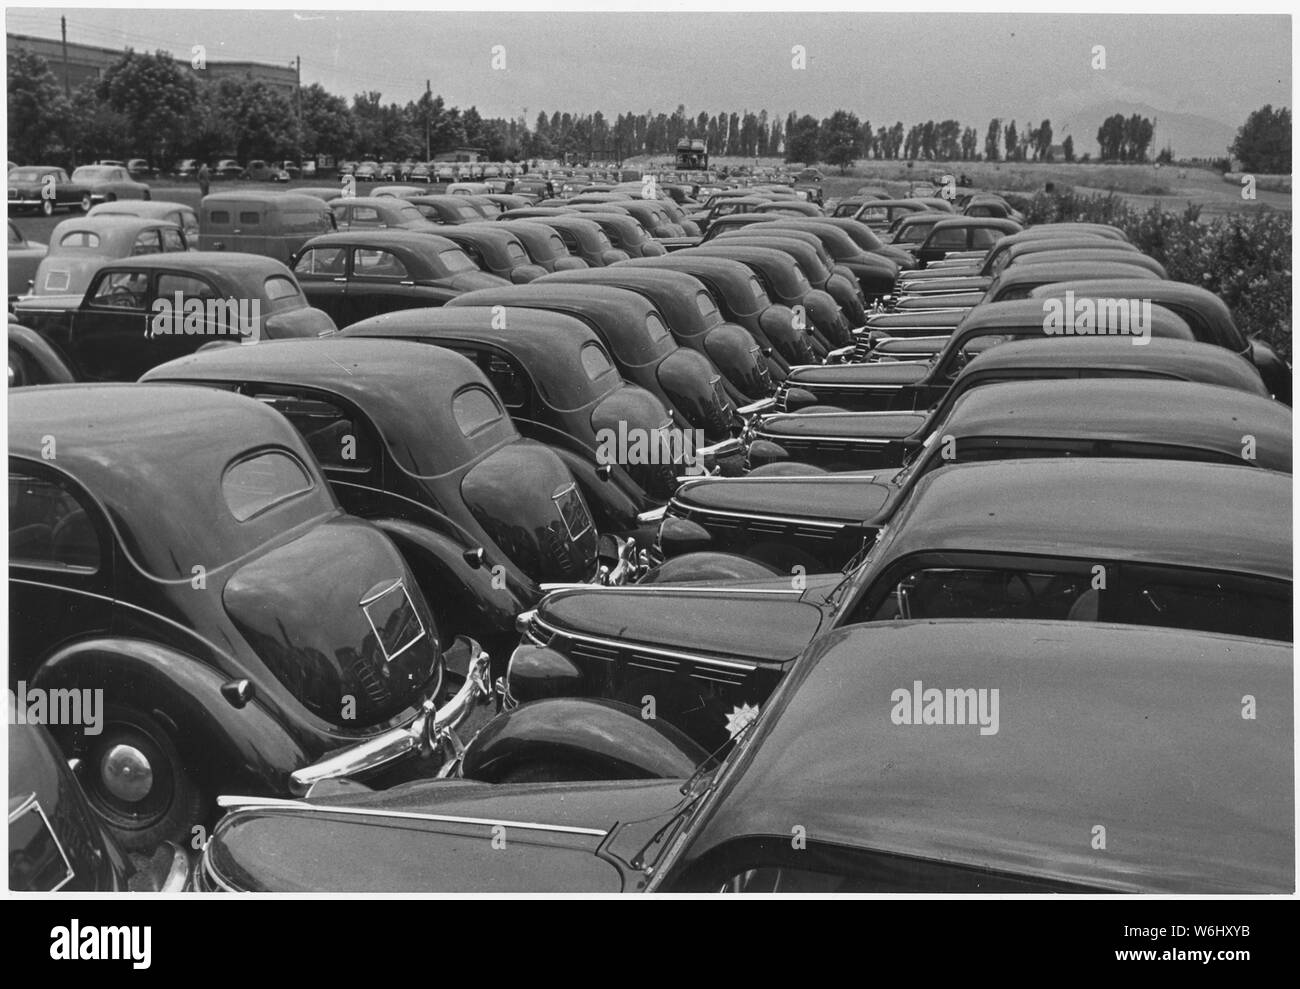 L'Italie. En 1950, l'investissement de l'Administration de la coopération économique a montré des résultats étonnants : Fiat production totale s'élevait à 150 milliards de lires (env. 240 millions de dollars), 70 de ce qui s'explique par la production de véhicules automobiles Banque D'Images